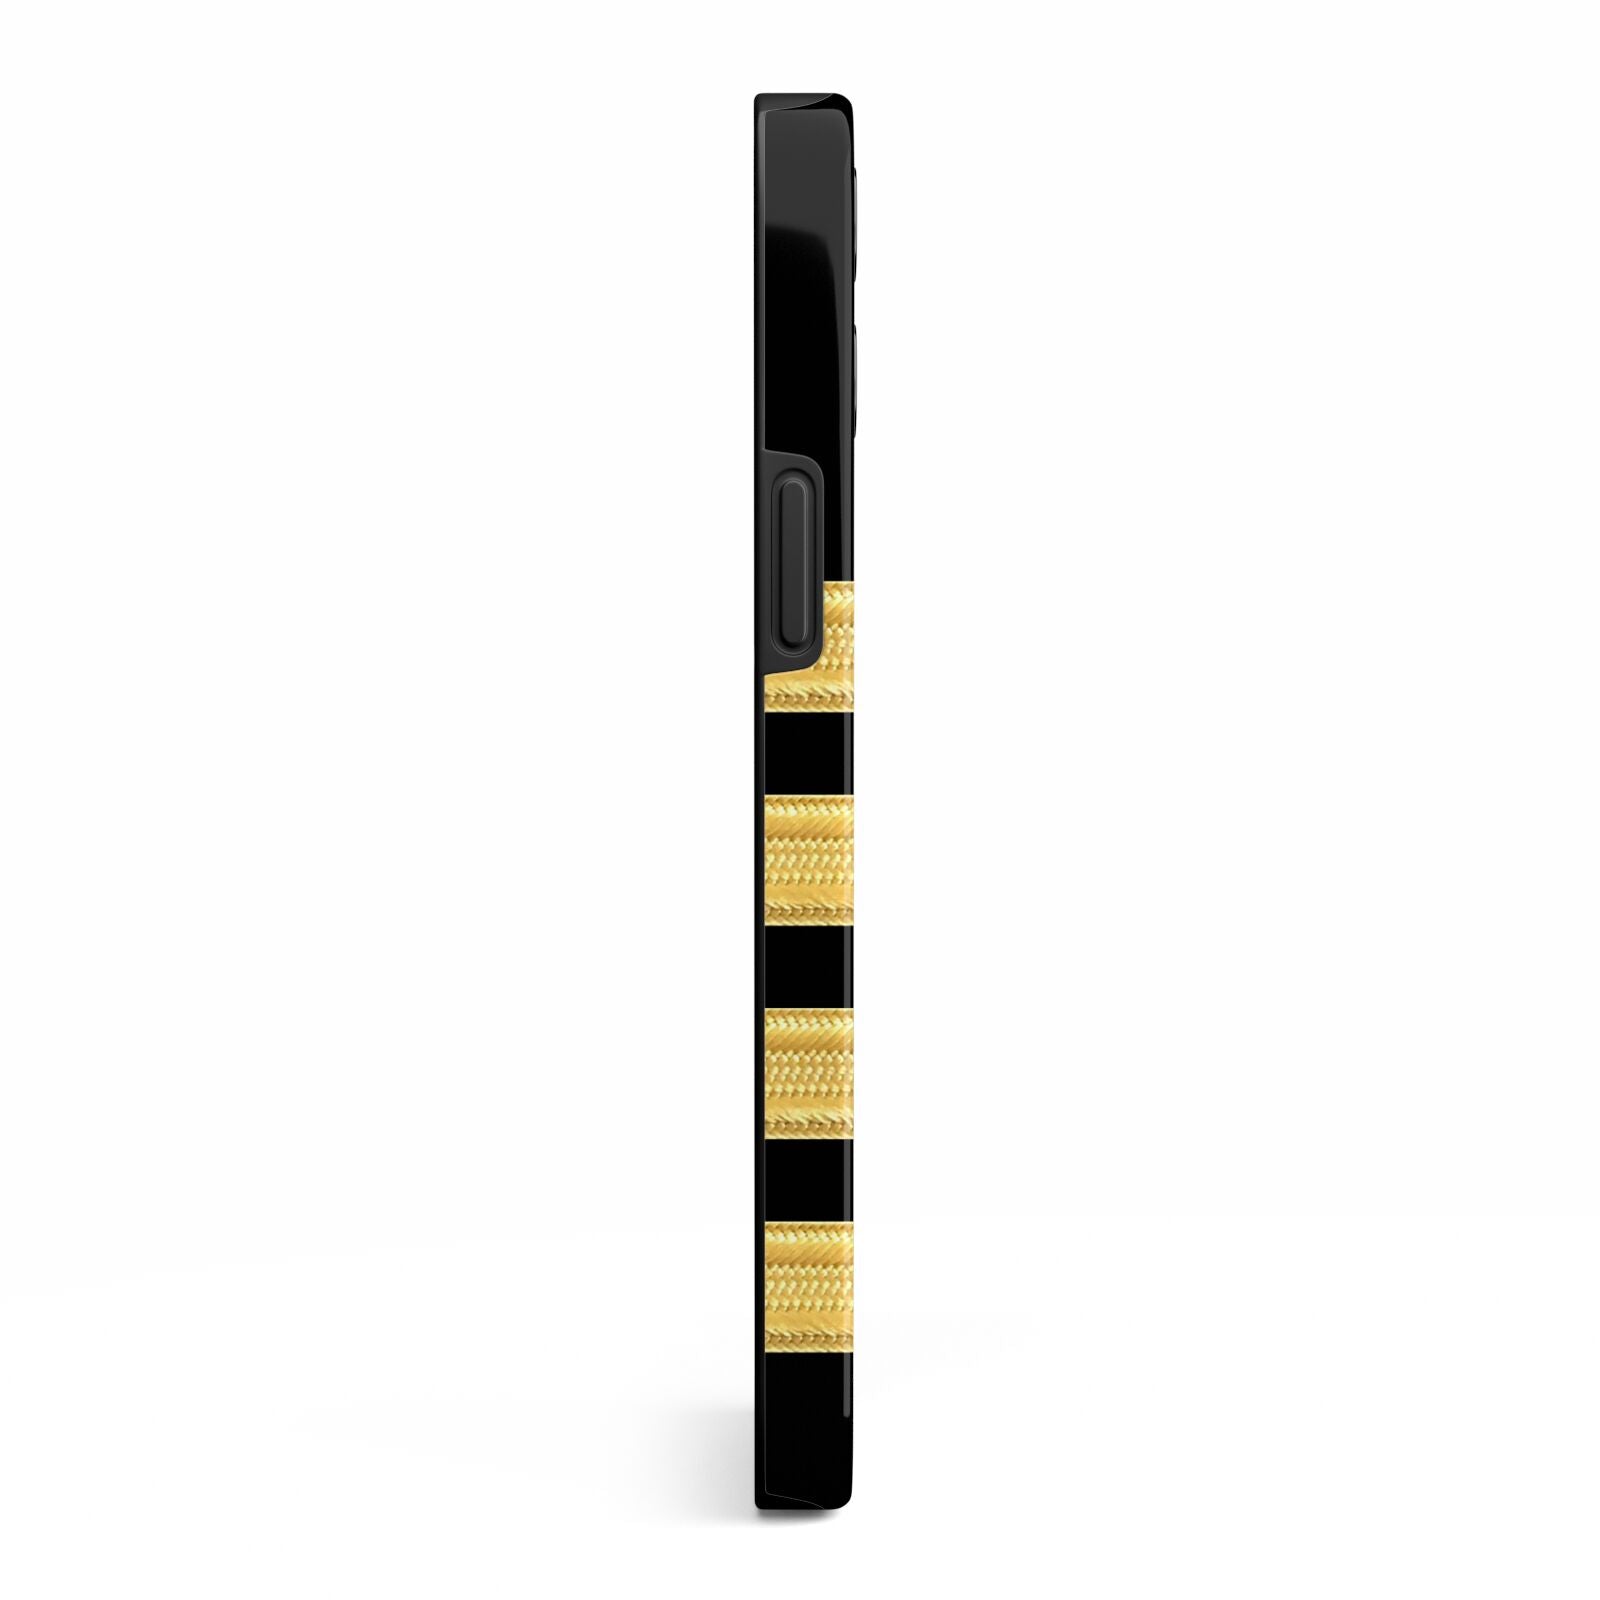 Black Gold Pilot Stripes iPhone 13 Pro Max Side Image 3D Tough Case